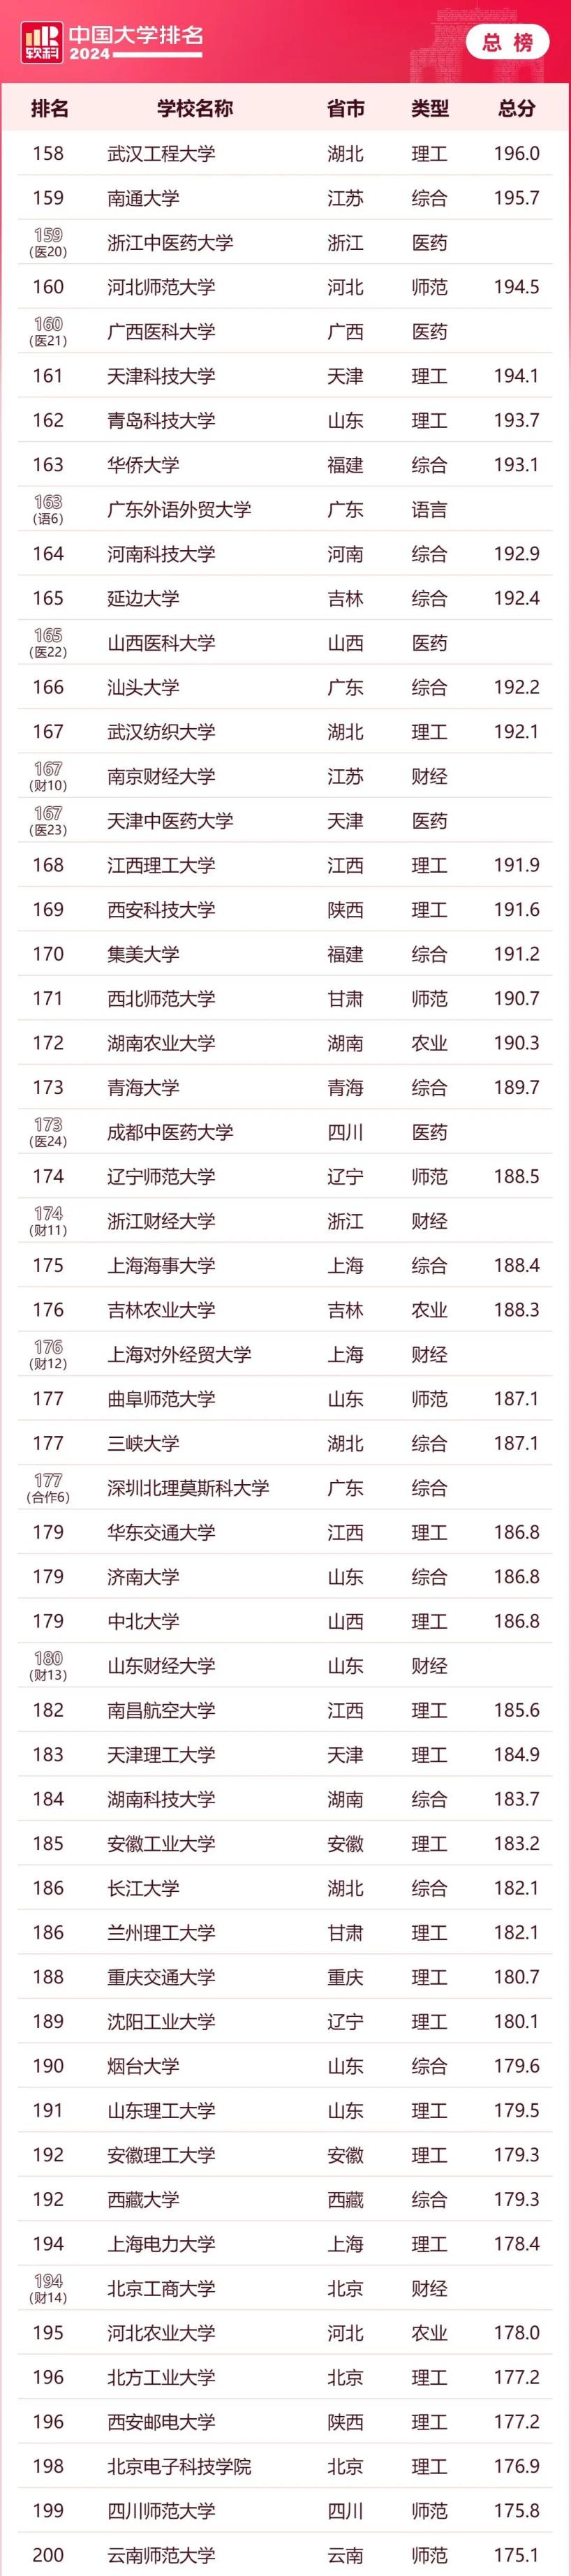 软科中国大学排名上海高校